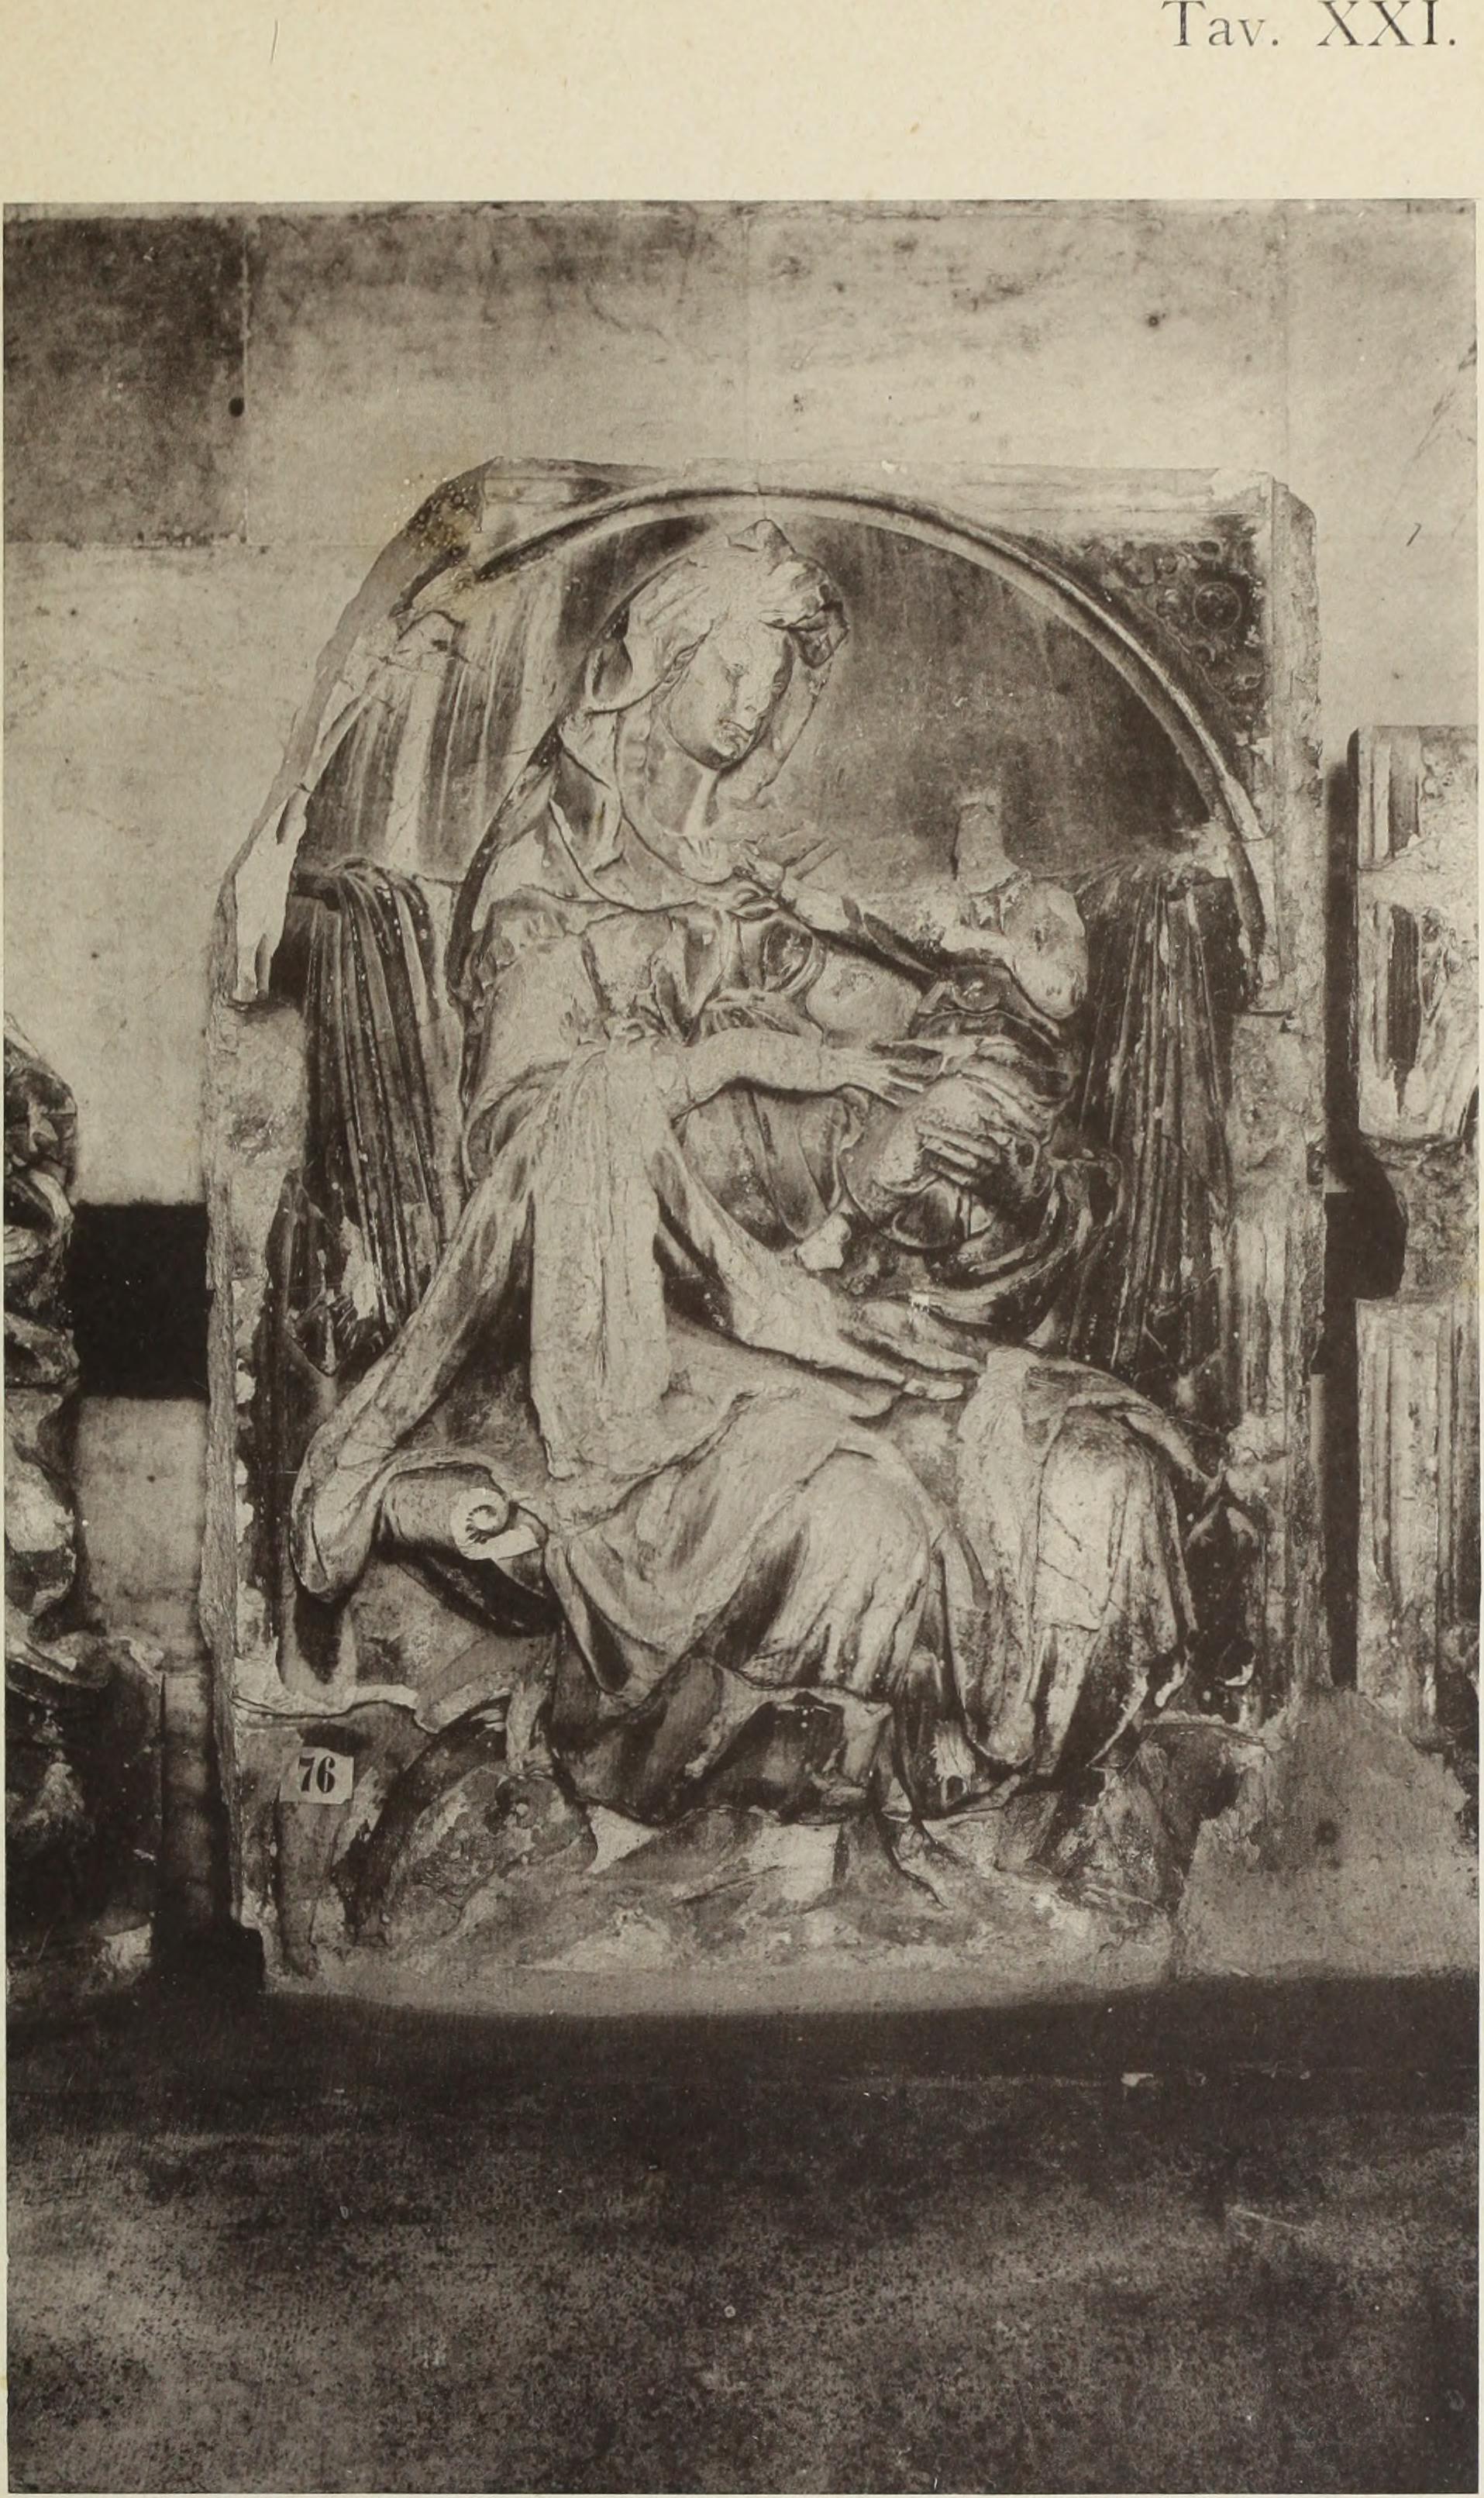 Le fonti di Siena e i loro aquedotti, note storiche dalle origini fino al MDLV (1906) (14590865047).jpg